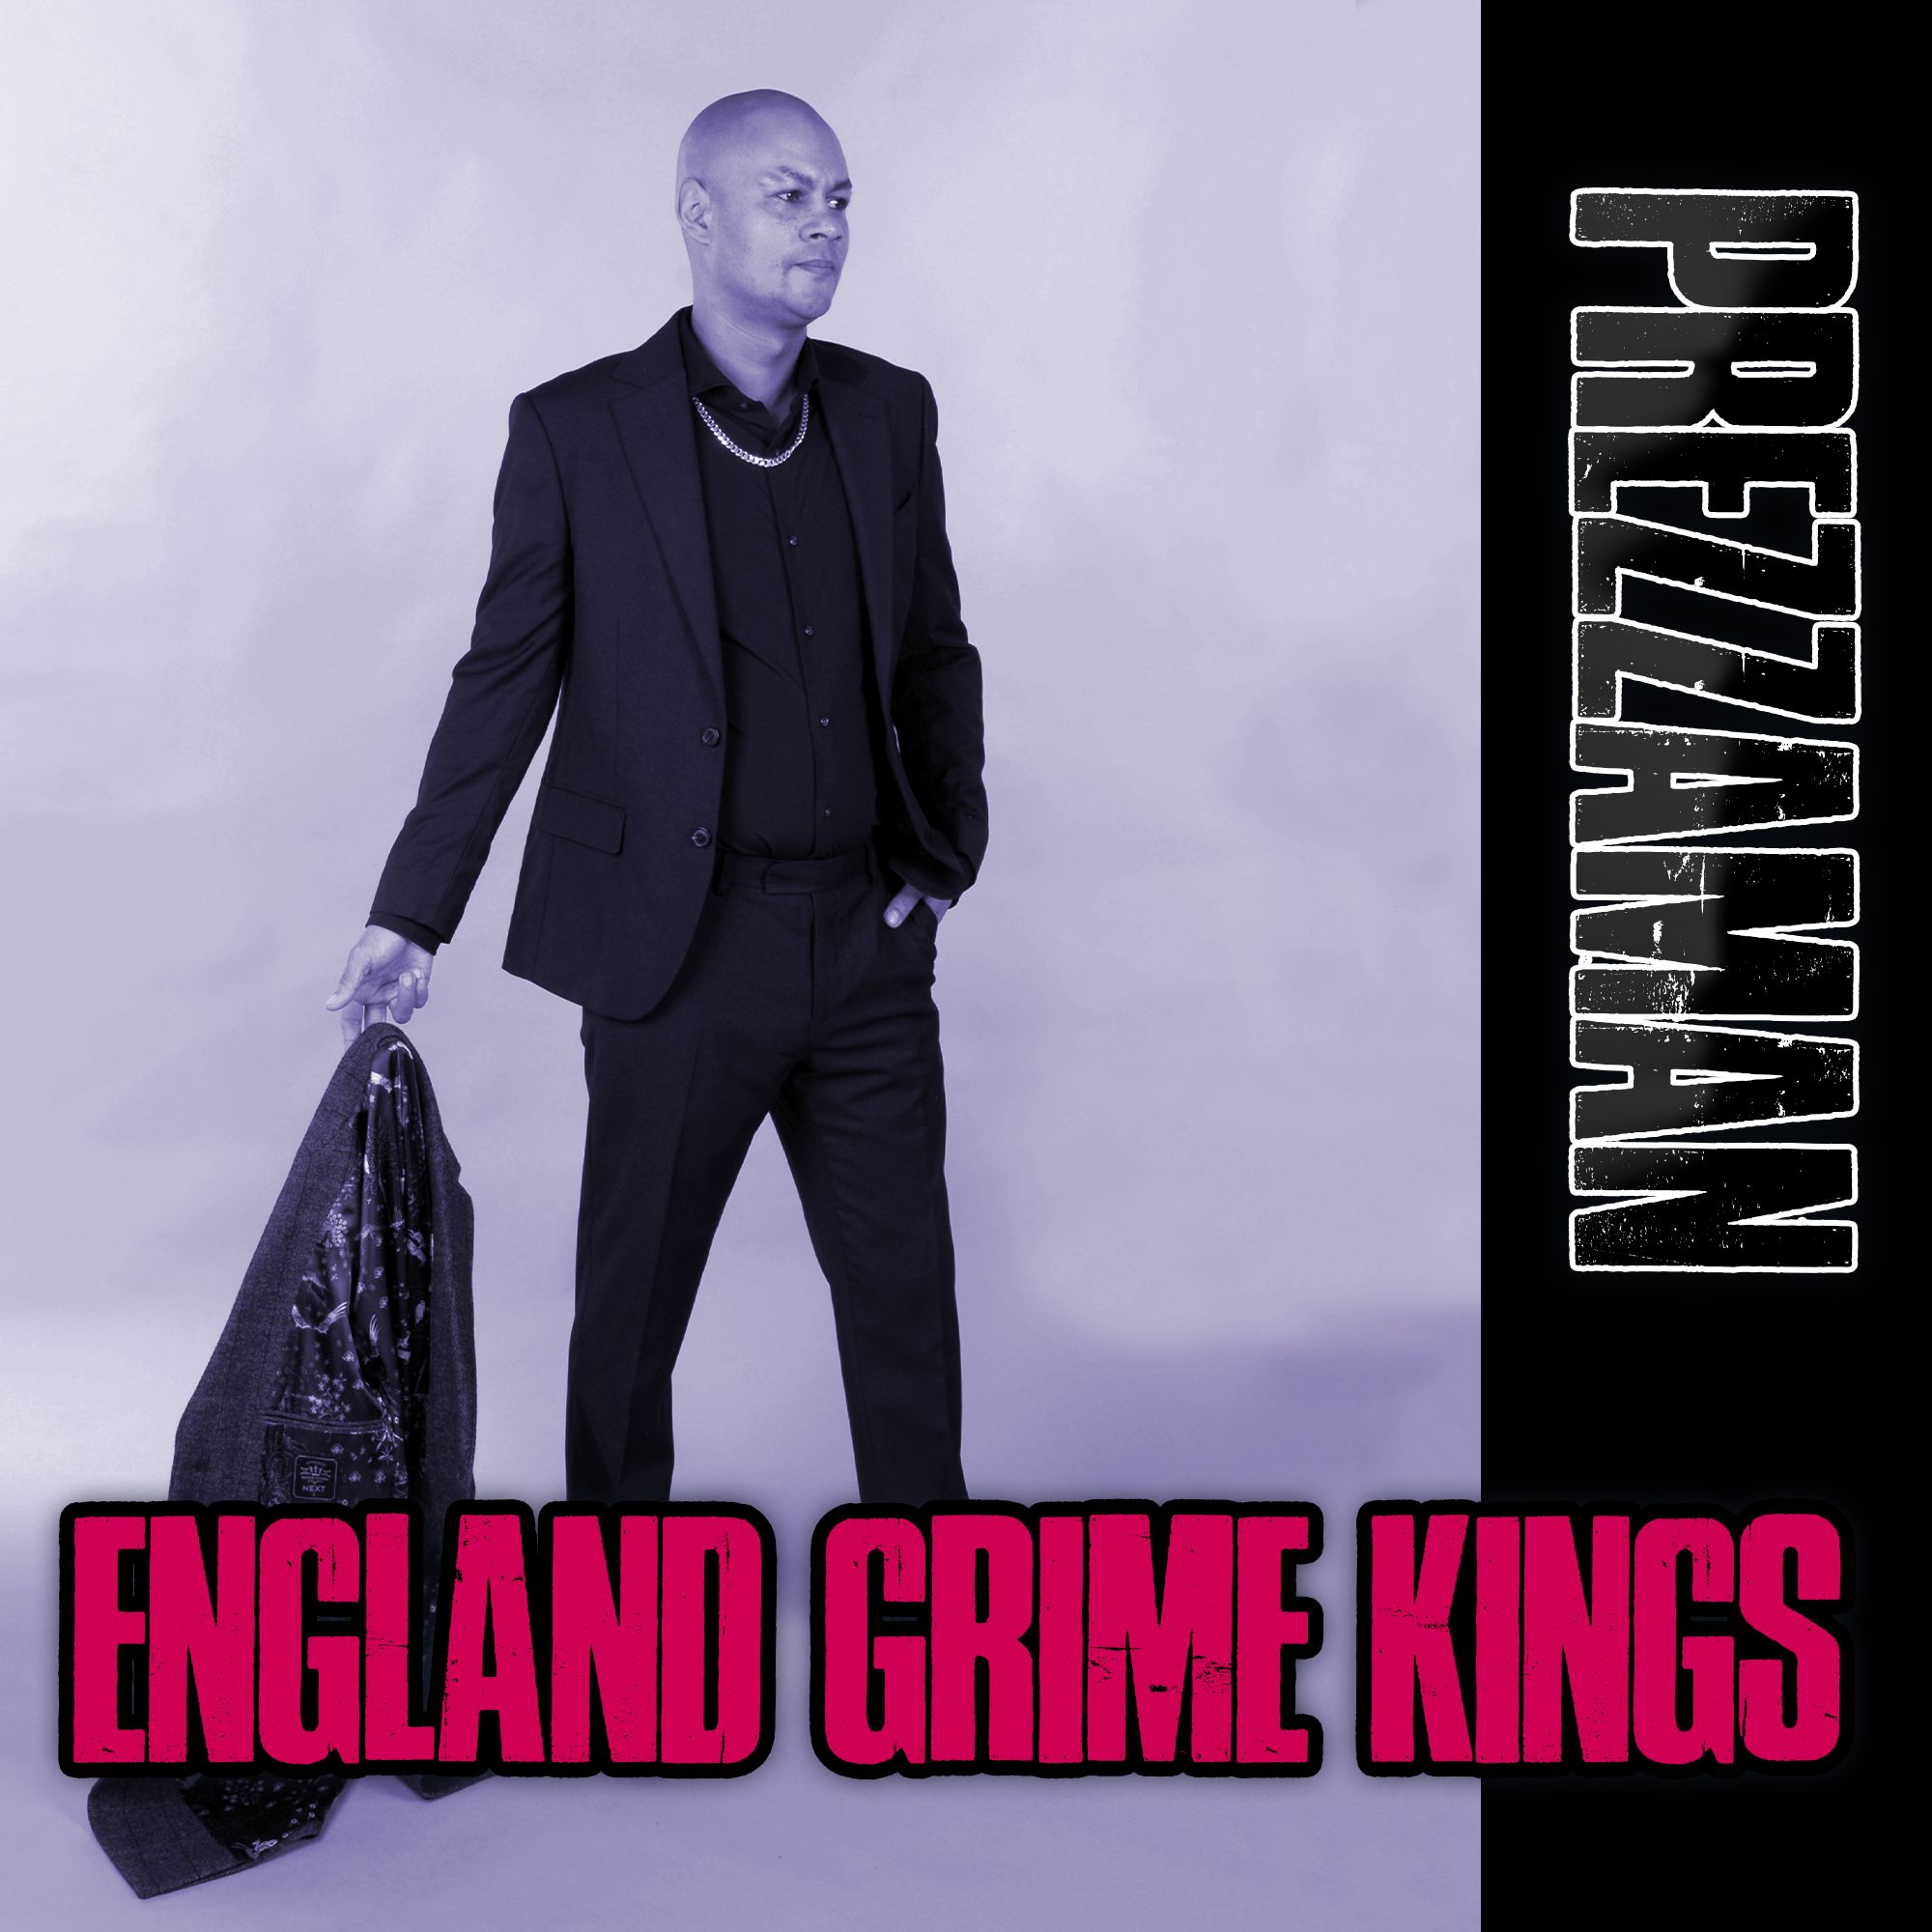 England Grime Kings by Prezzaman